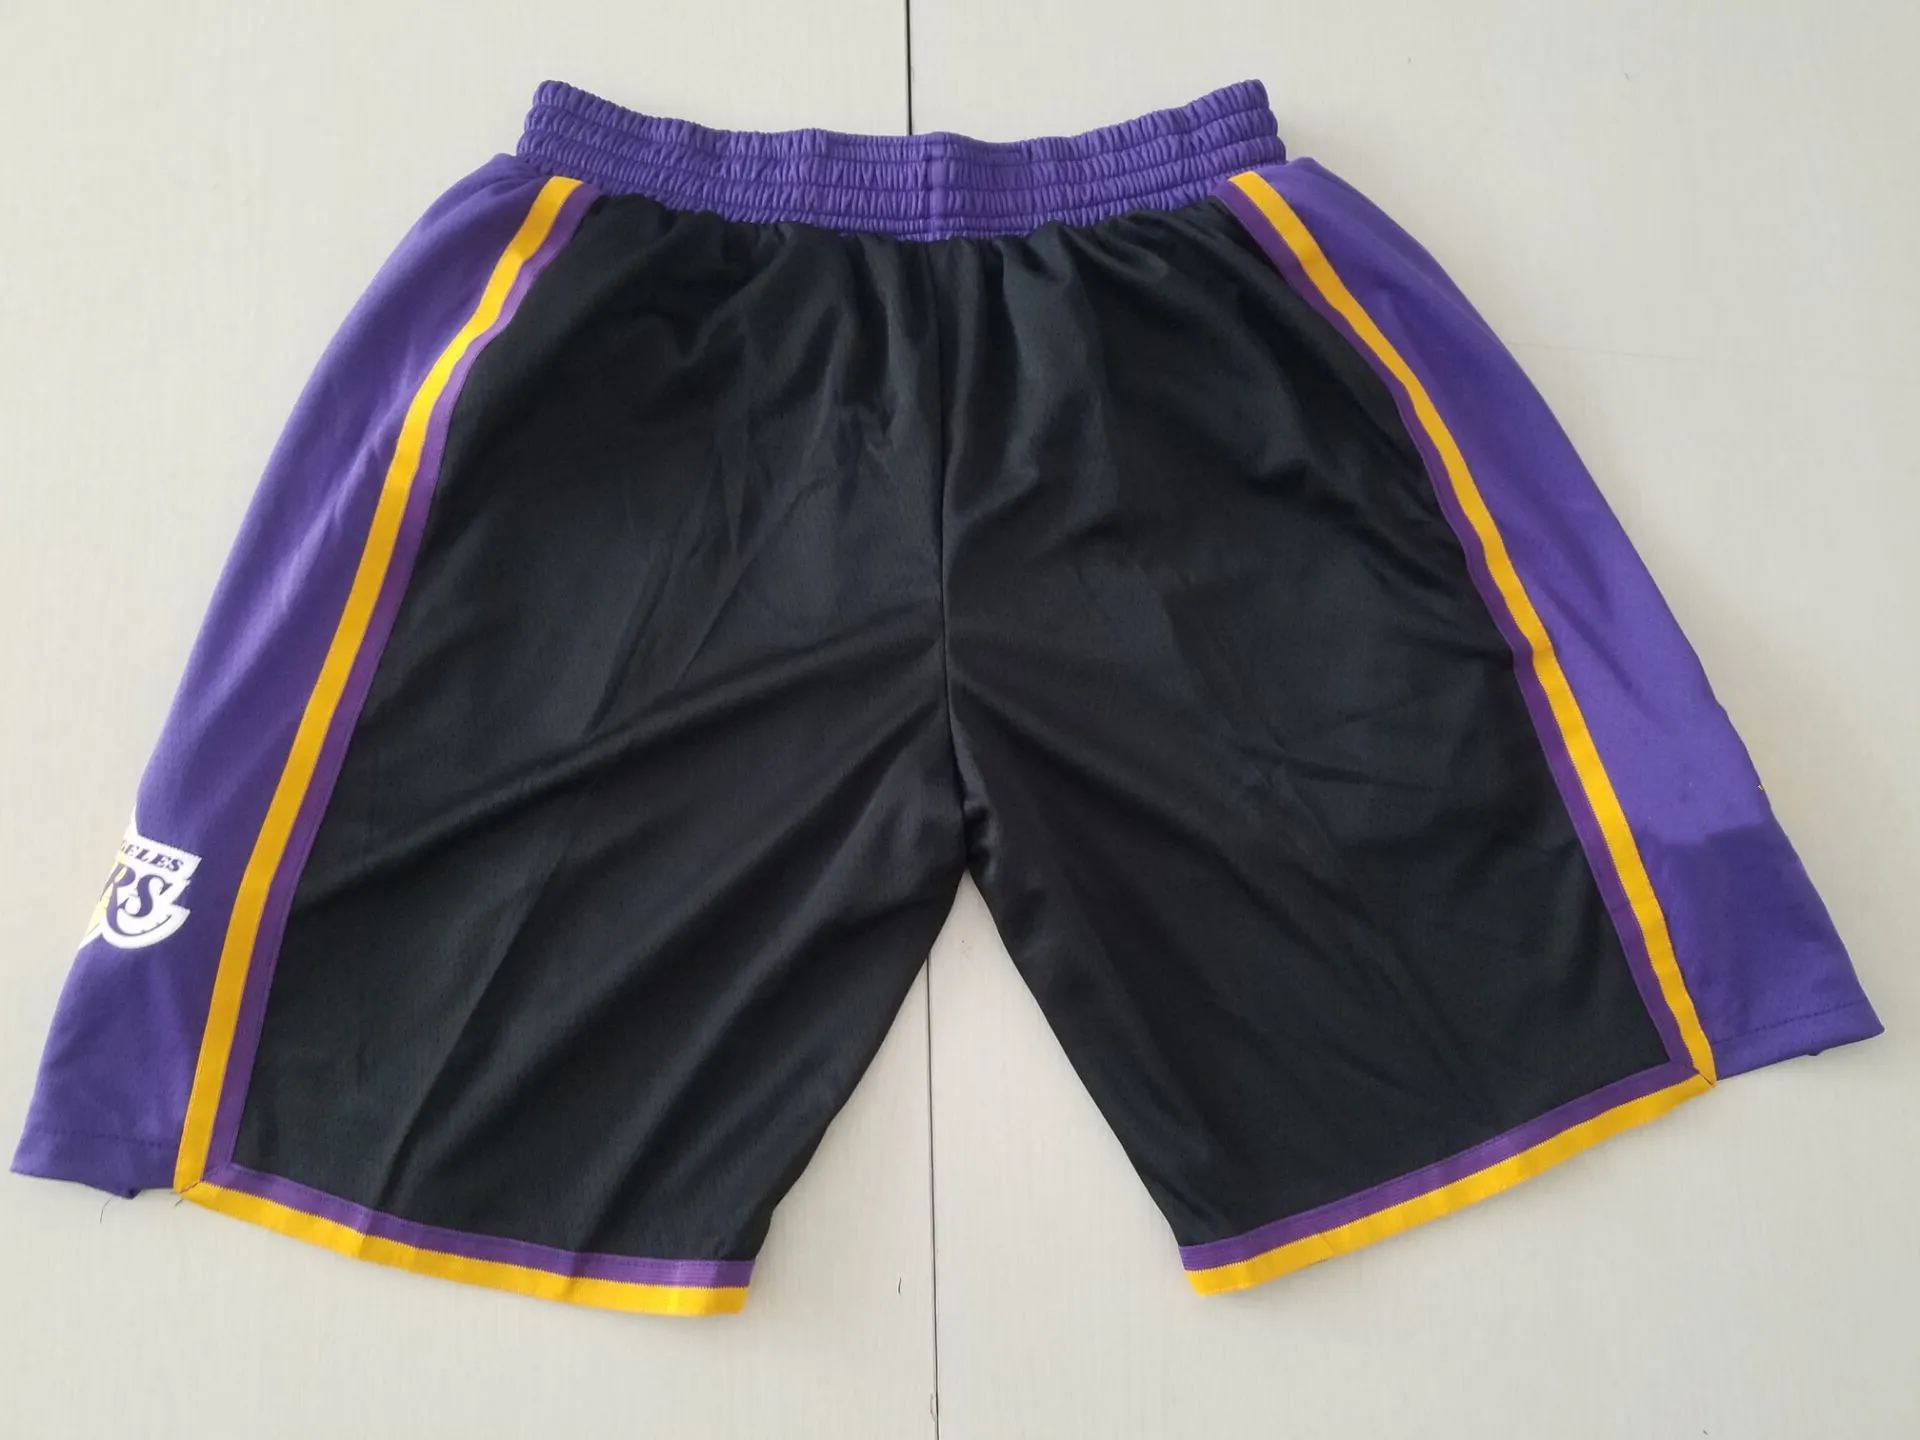 Equipe de basquete shorts correndo roupas esportivas la preto roxo cor tamanho S-XXL mix match order alta qualidade